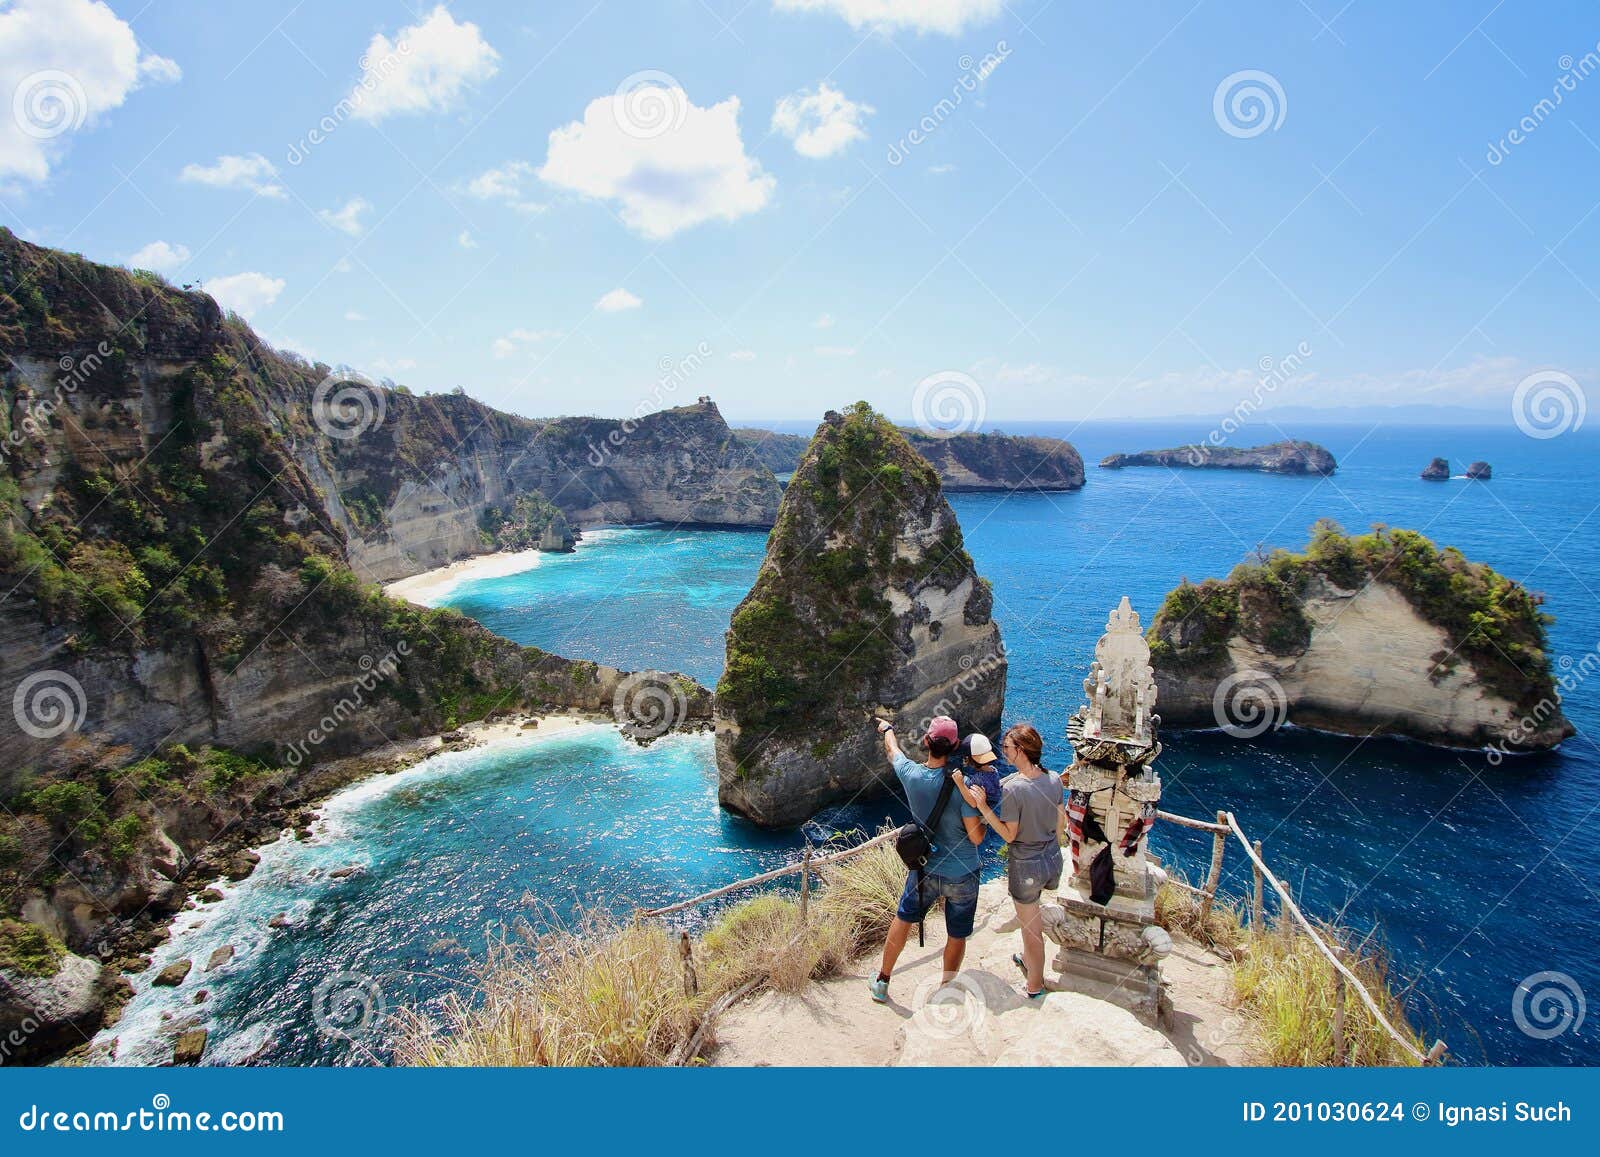 雅加达千岛群岛之小众而绝美的塞帕岛_行客旅游网